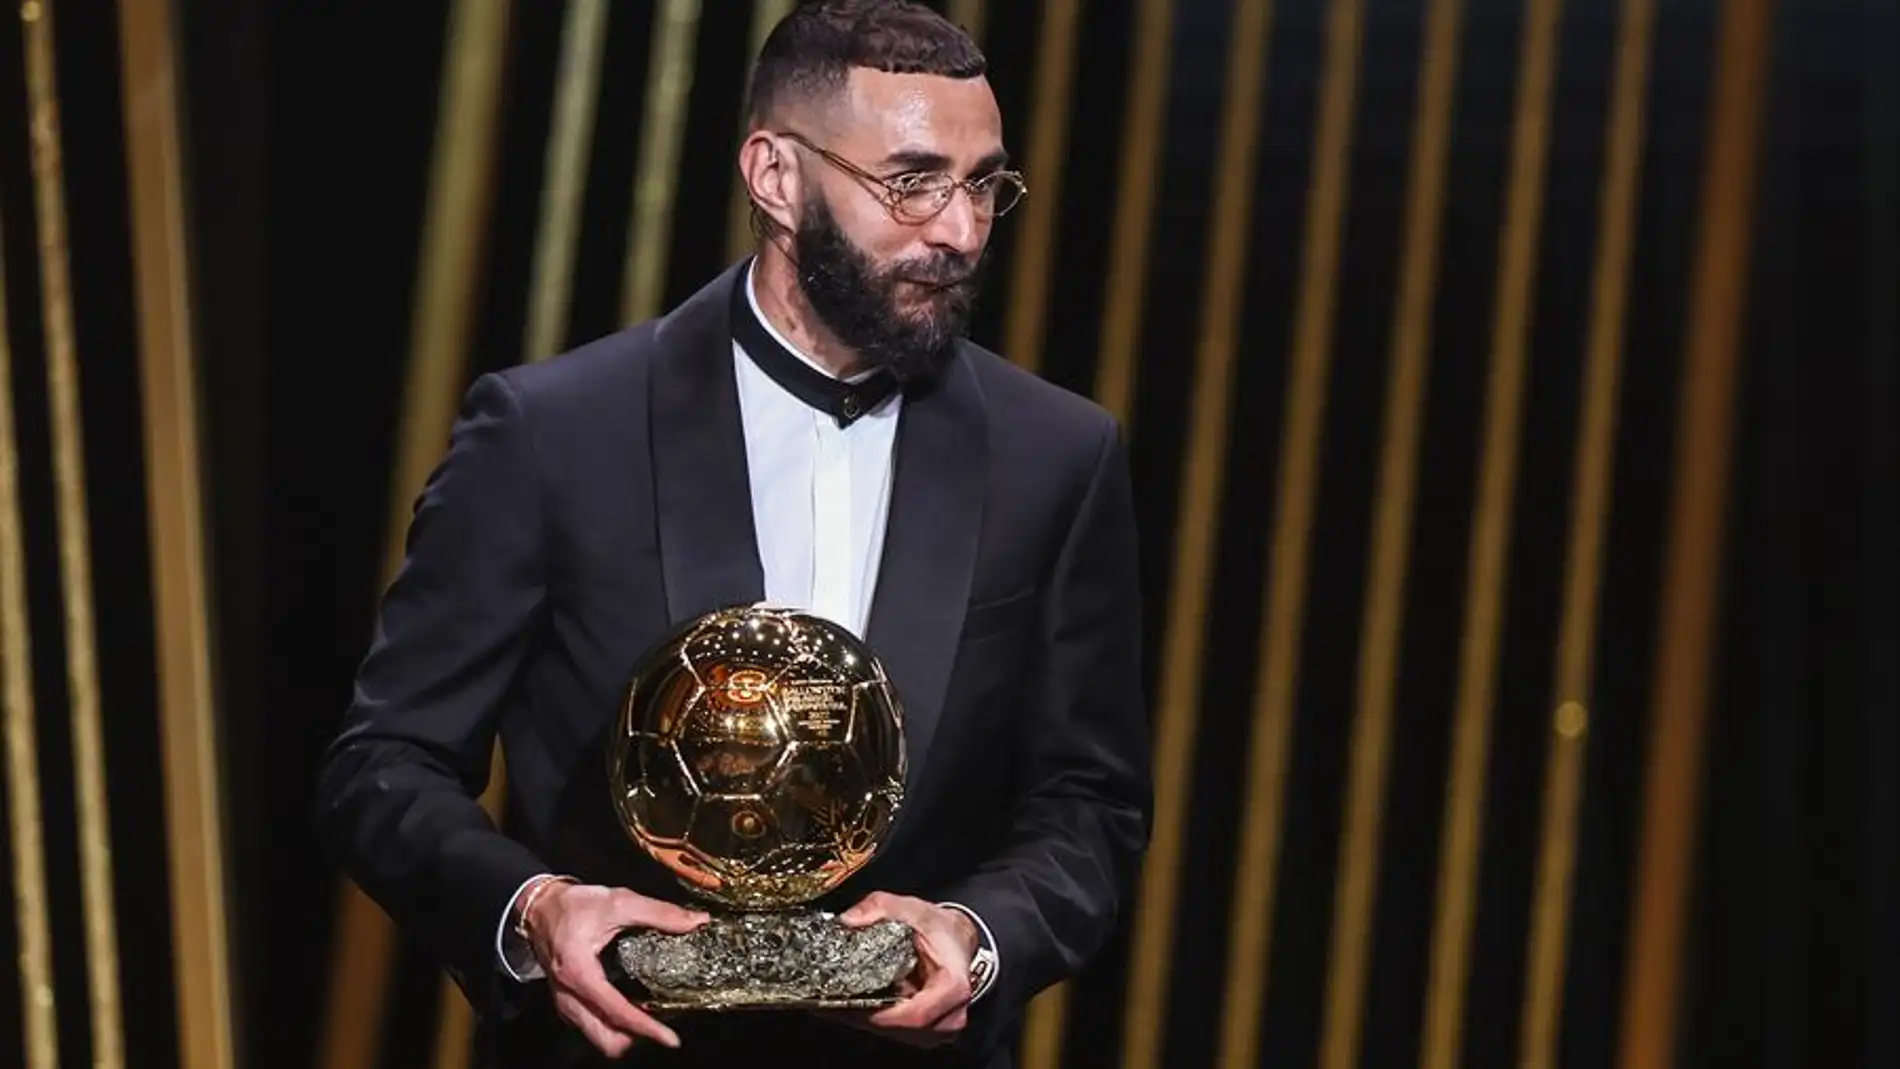 Benzemá conquista el Balón de Oro y sucede a Messi